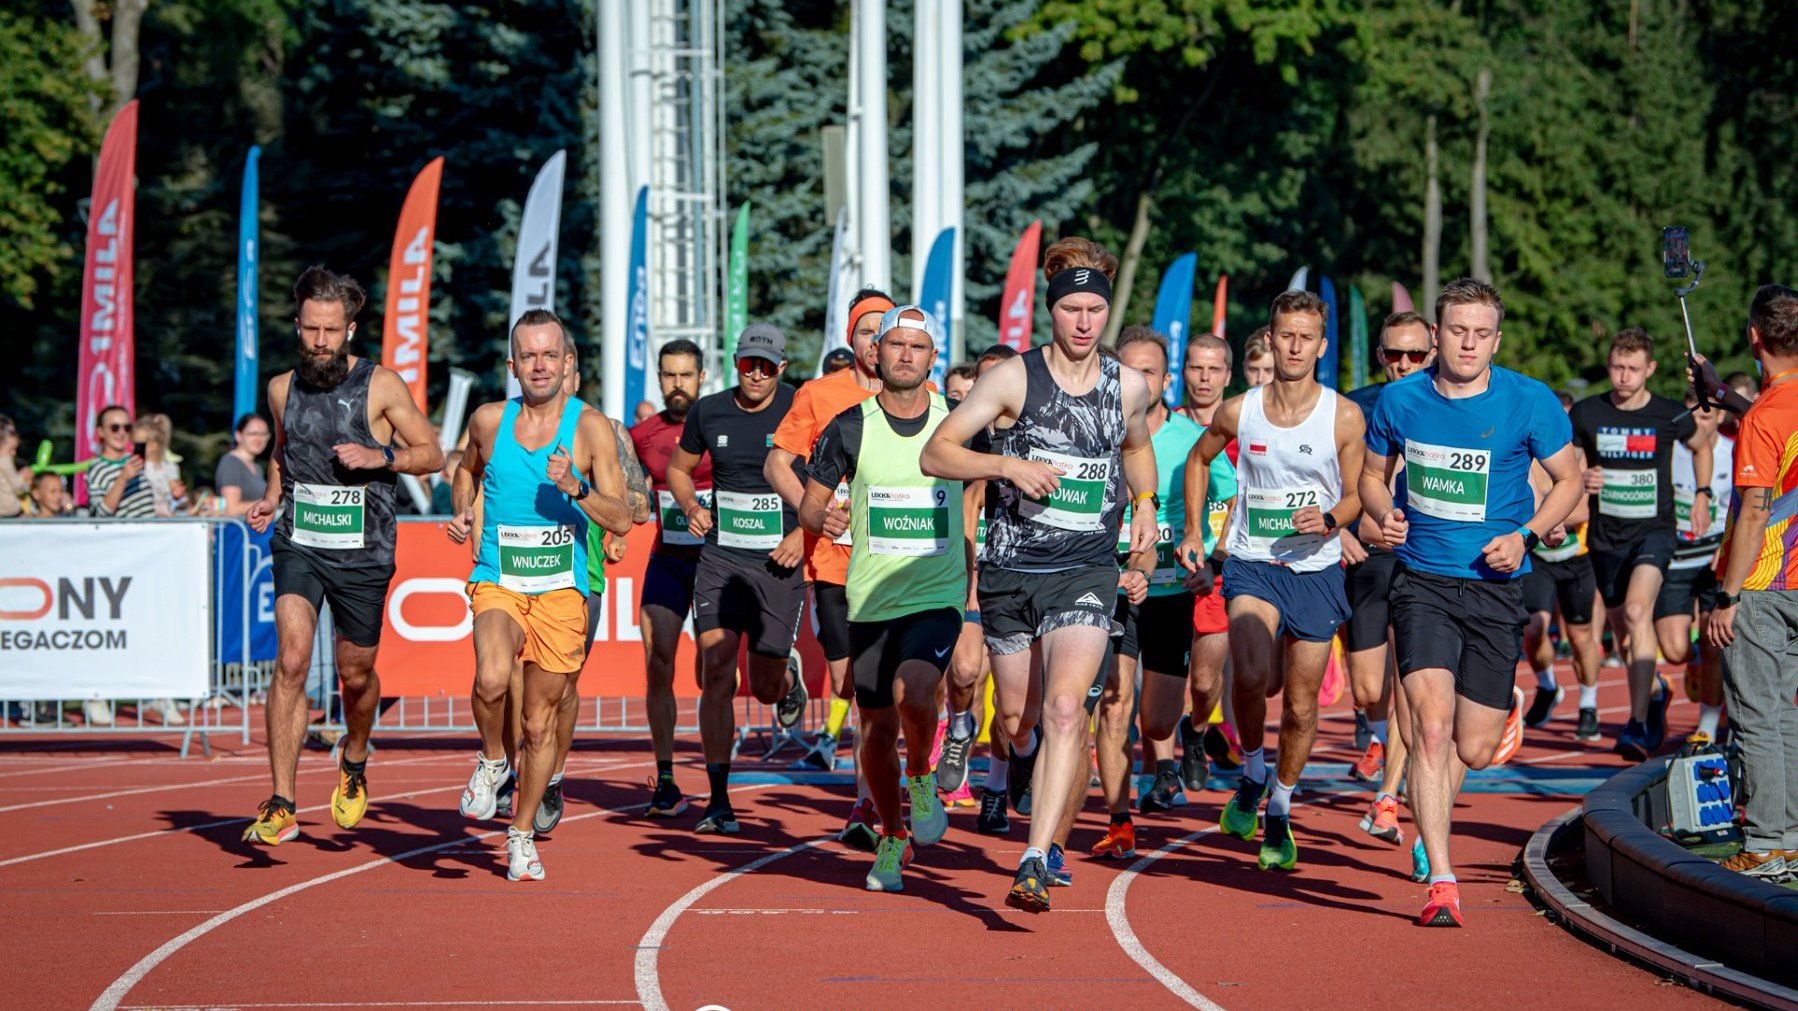 Grupa mężczyzn ubrana na sportowo rozpoczyna bieg na torze sportowym.